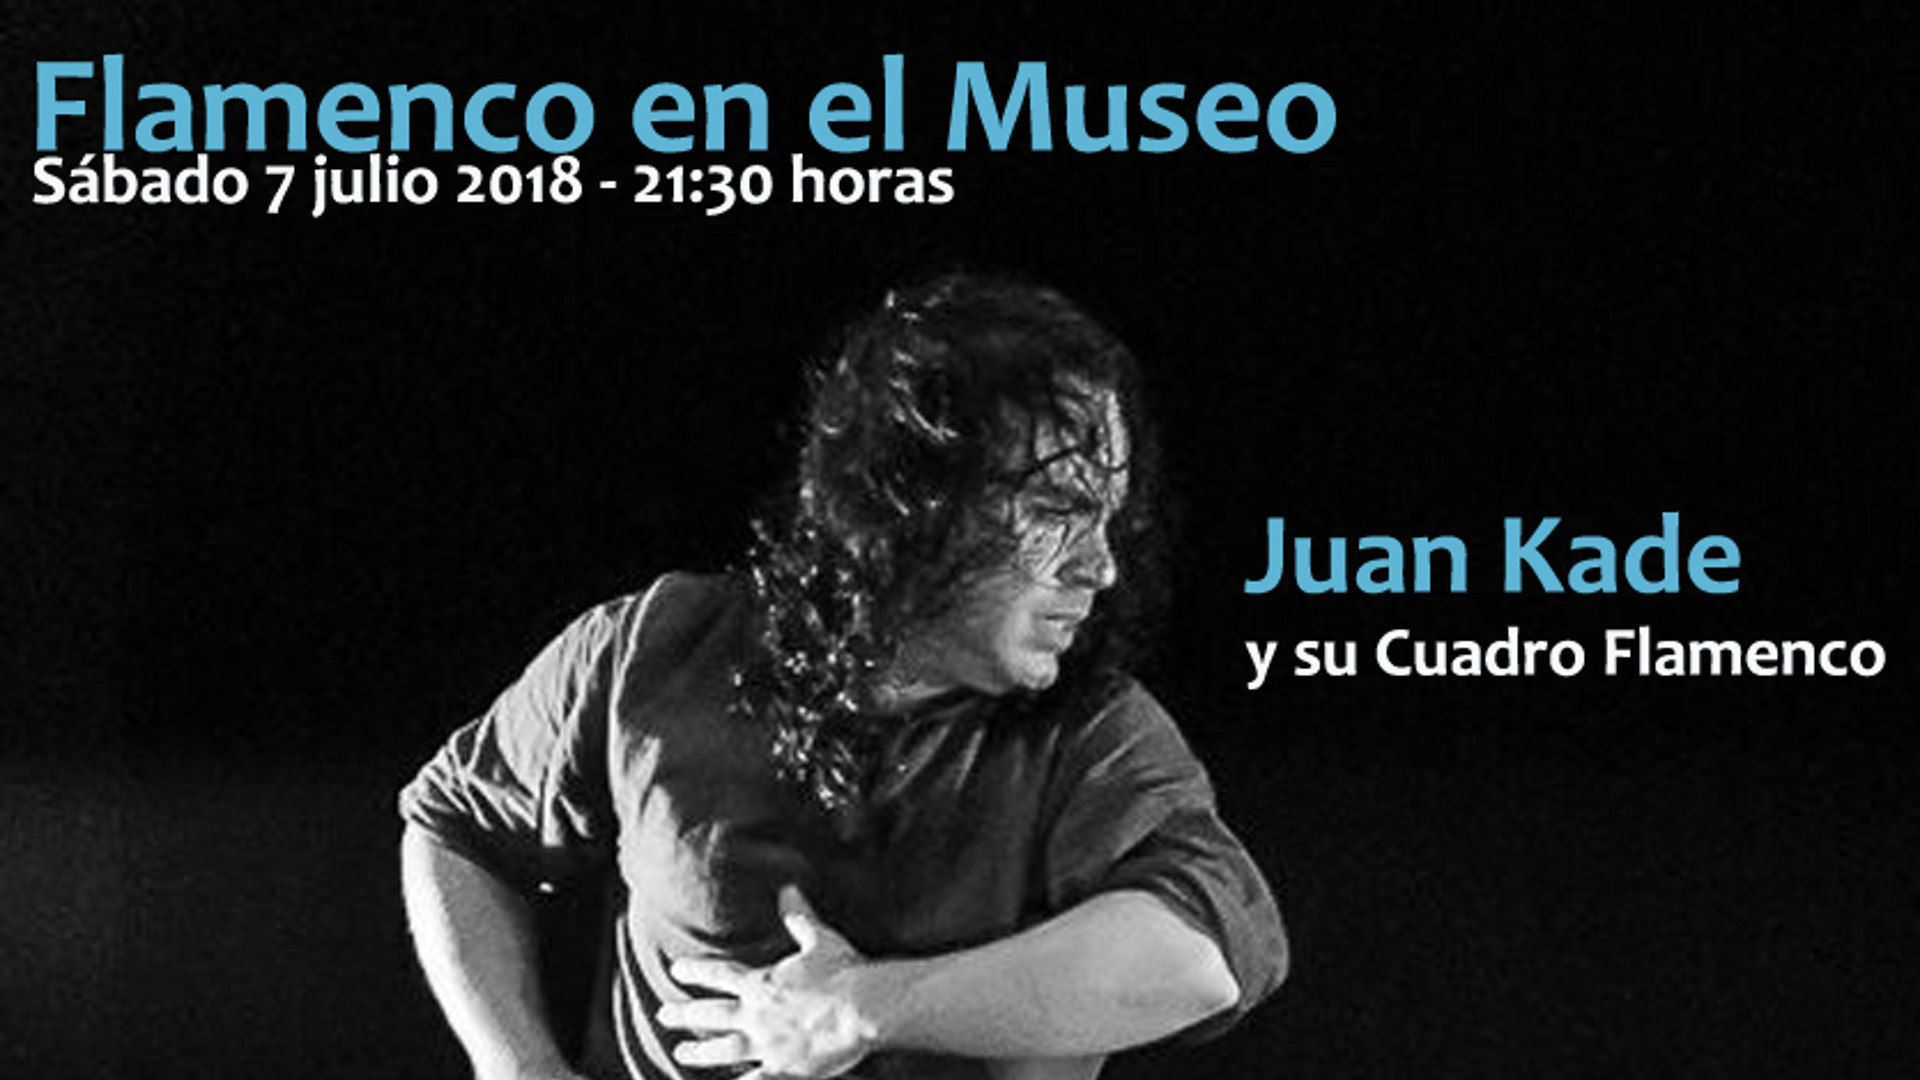 Juan Kade. Flamenco en el Museo